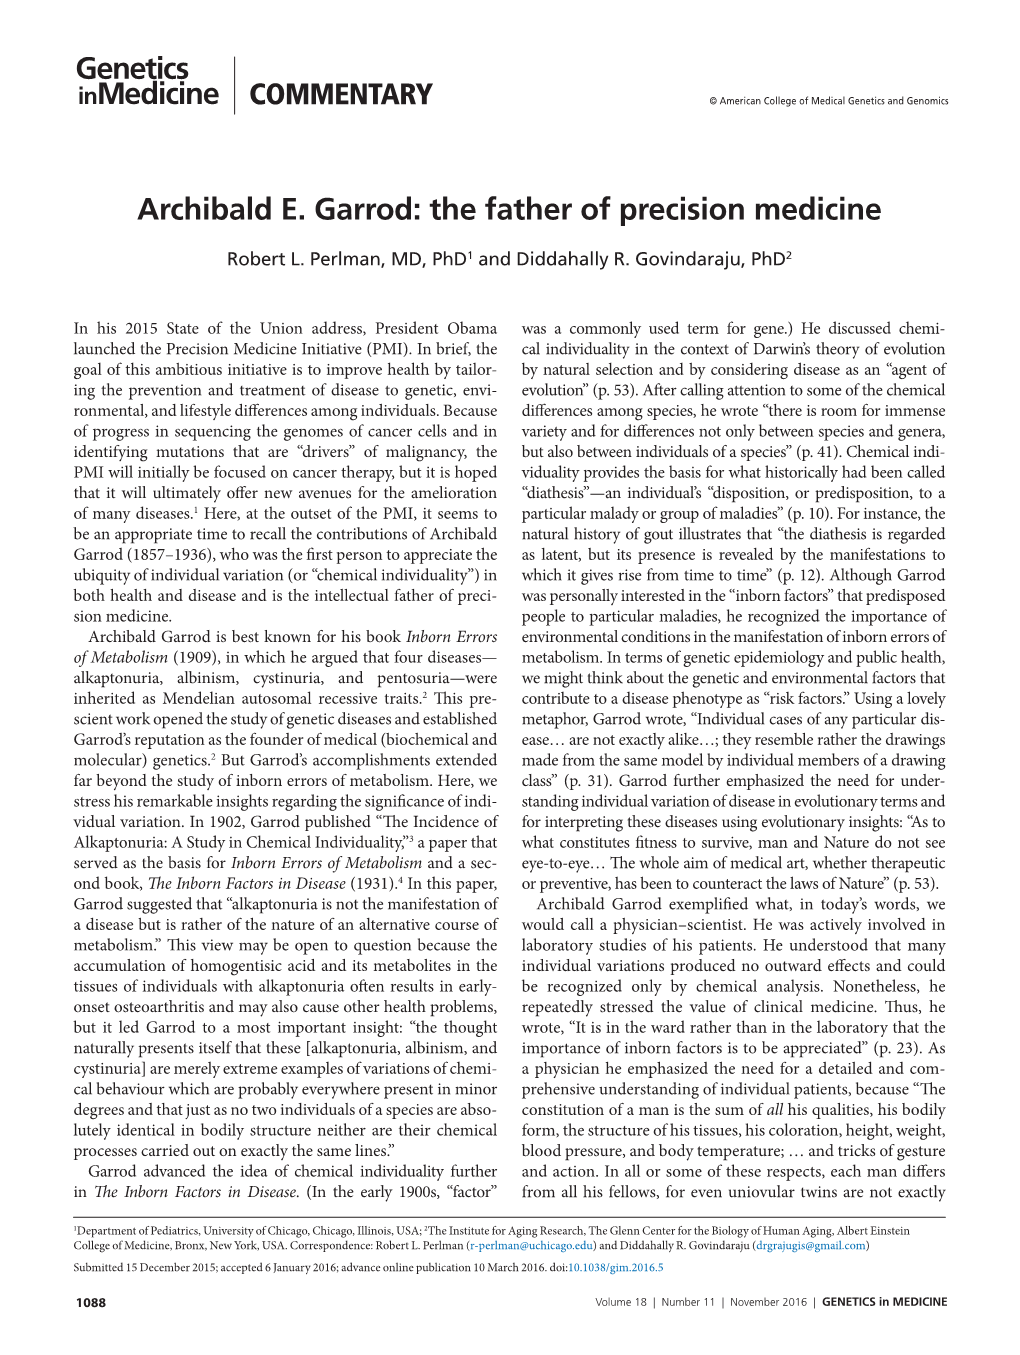 The Father of Precision Medicine